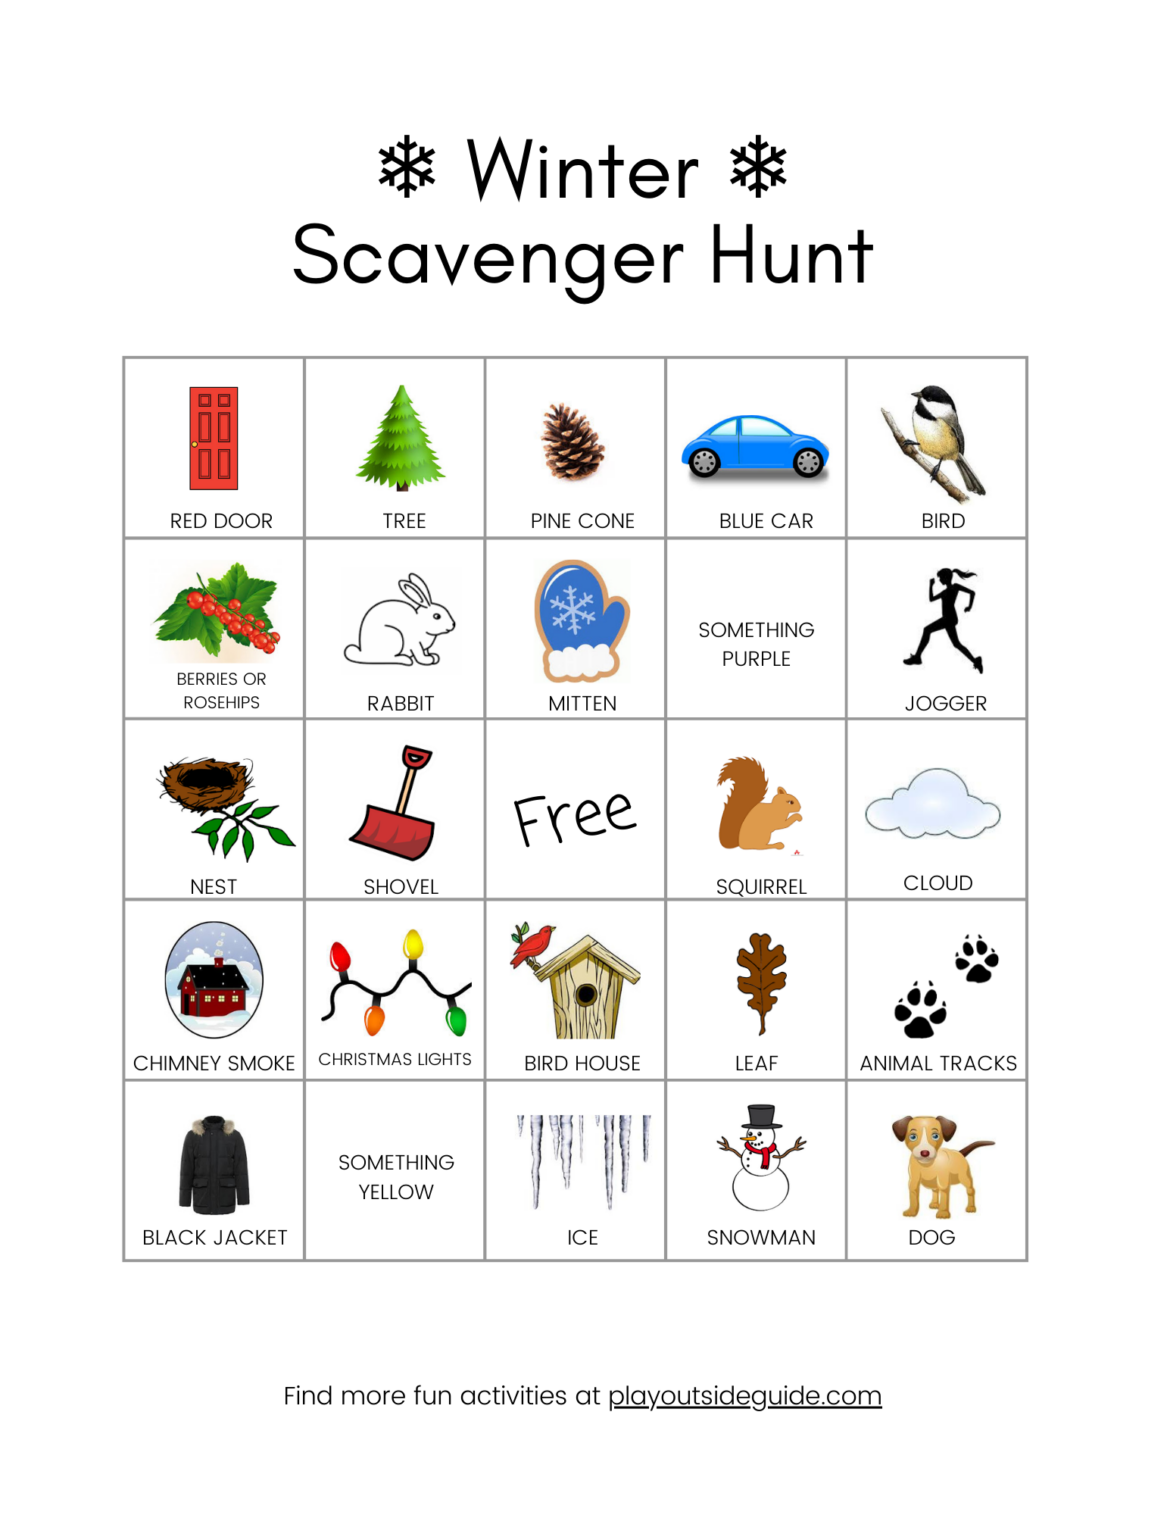 Winter Scavenger Hunt Play Outside Guide